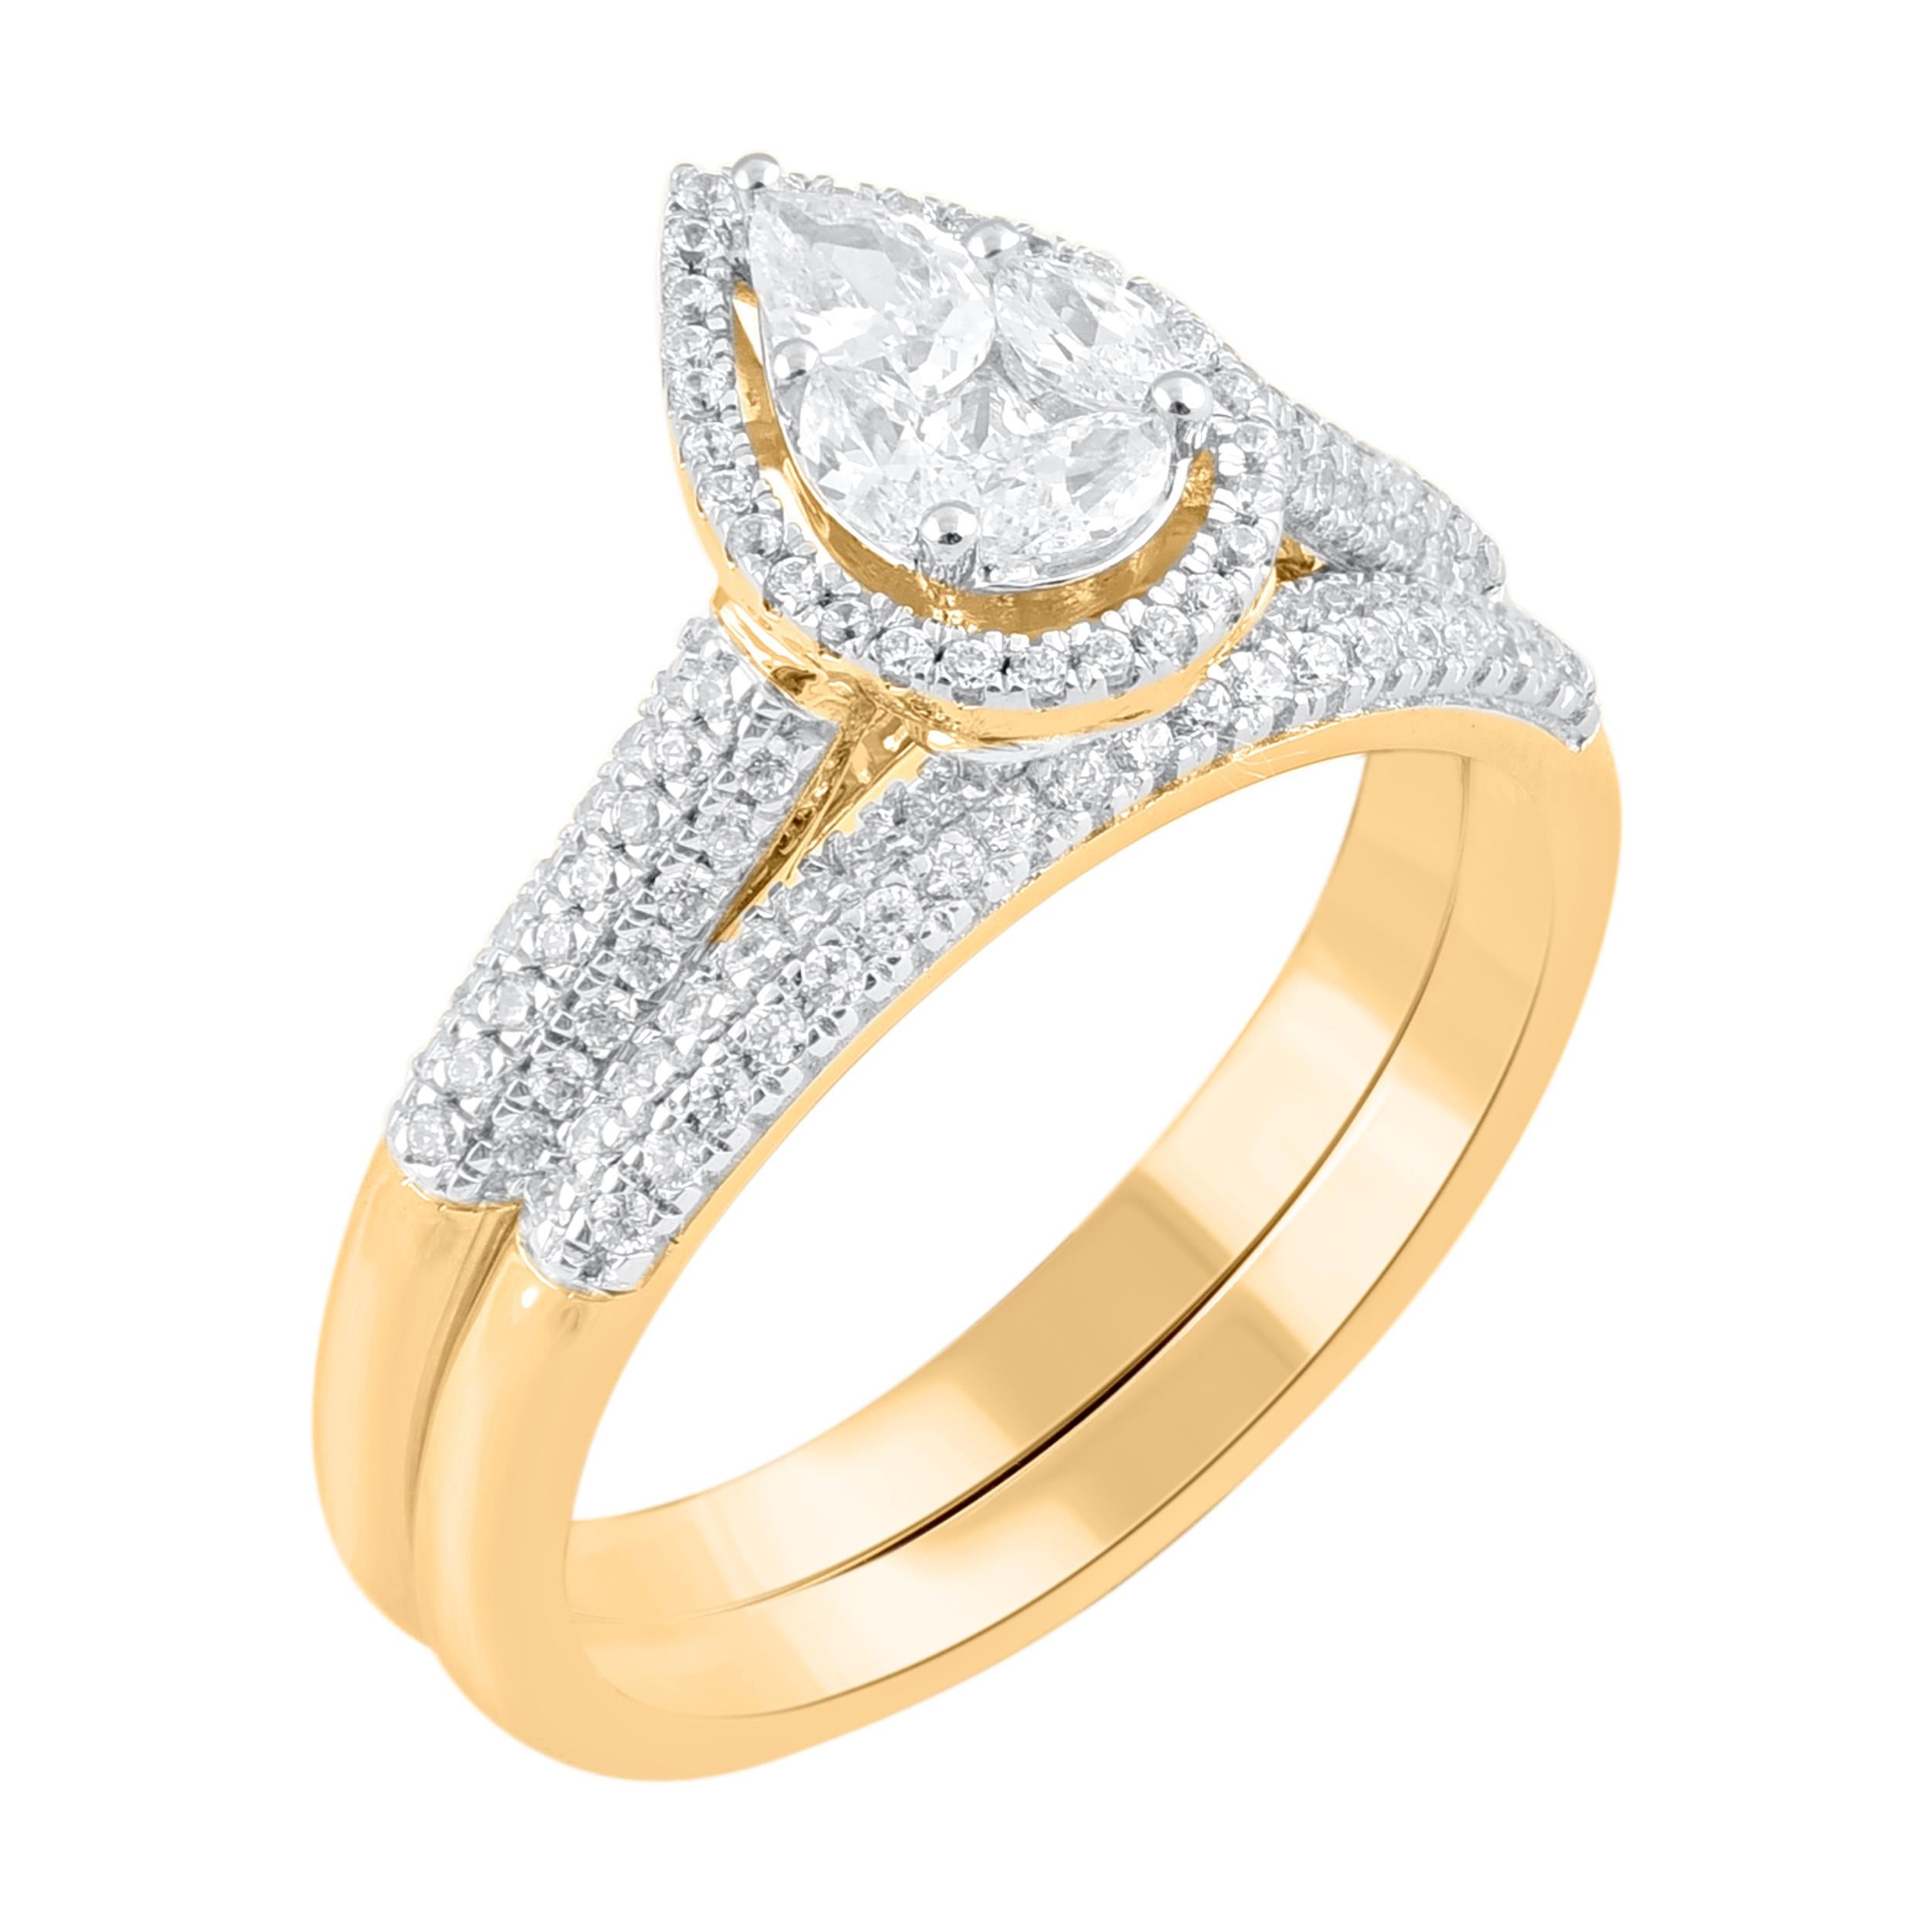 Machen Sie diesen besonderen Moment magisch mit dem exquisiten Diamant-Brautring-Set. Dieser klassische Brautring ist mit 116 Diamanten im Einzel-, Prinzess-, Birnen- und Marquise-Schliff in Druck- und Zackenfassung besetzt. Dieser Ring ist aus 18